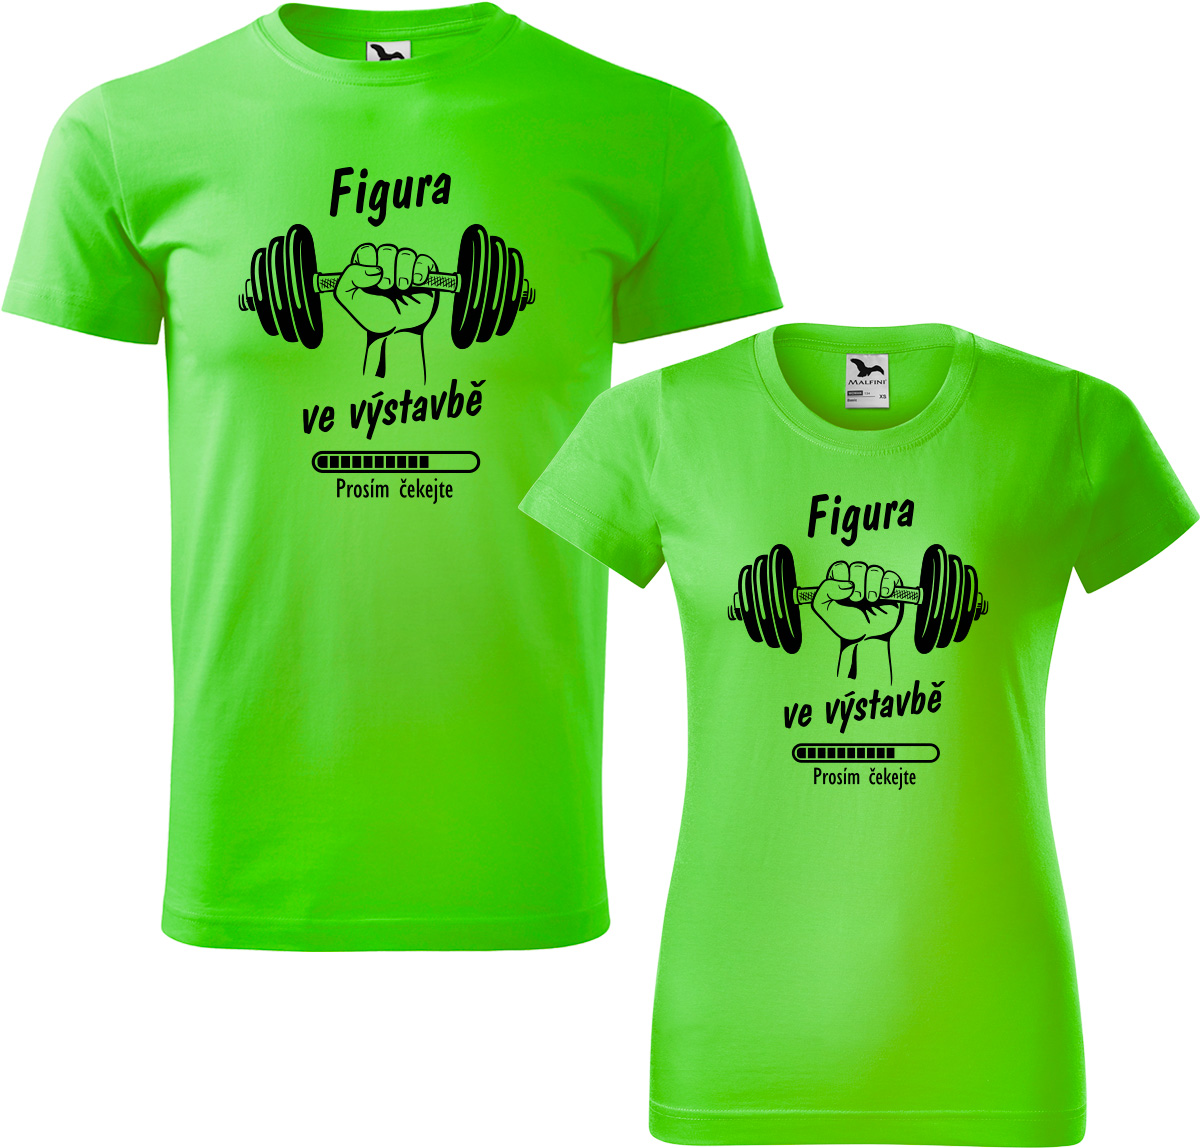 Trička pro páry - Figura ve výstavbě Barva: Apple Green (92), Velikost dámské tričko: S, Velikost pánské tričko: XL